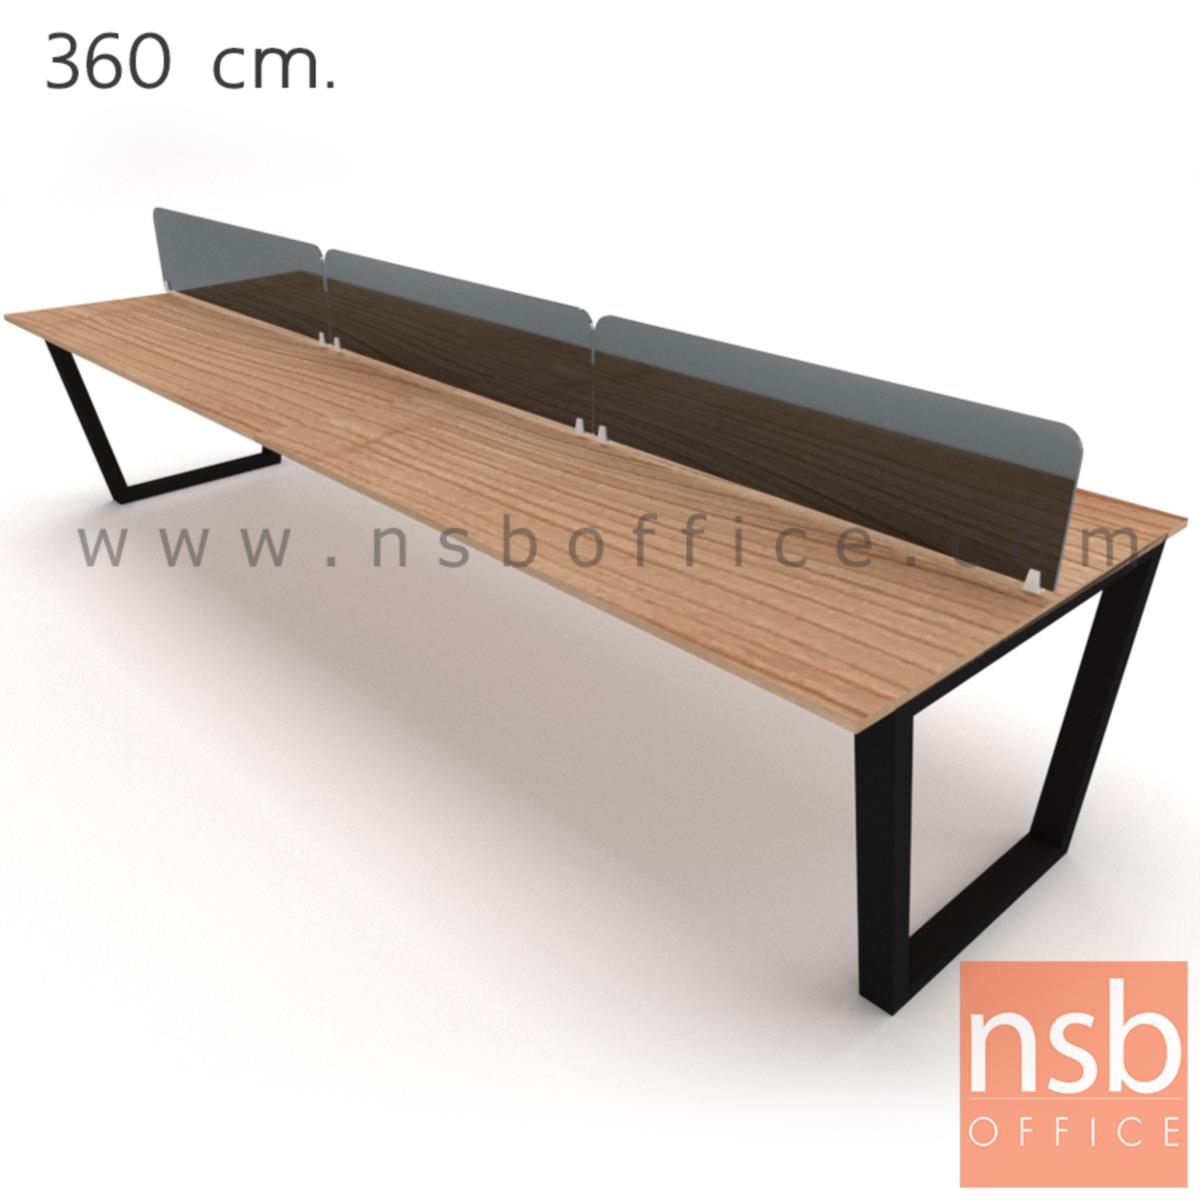 ชุดโต๊ะทำงานกลุ่ม   4 ,6 ที่นั่ง ขนาด 240W ,360W cm.  พร้อมมิสกรีนกระจกสีดำ ขาเหล็กทรงคางหมู